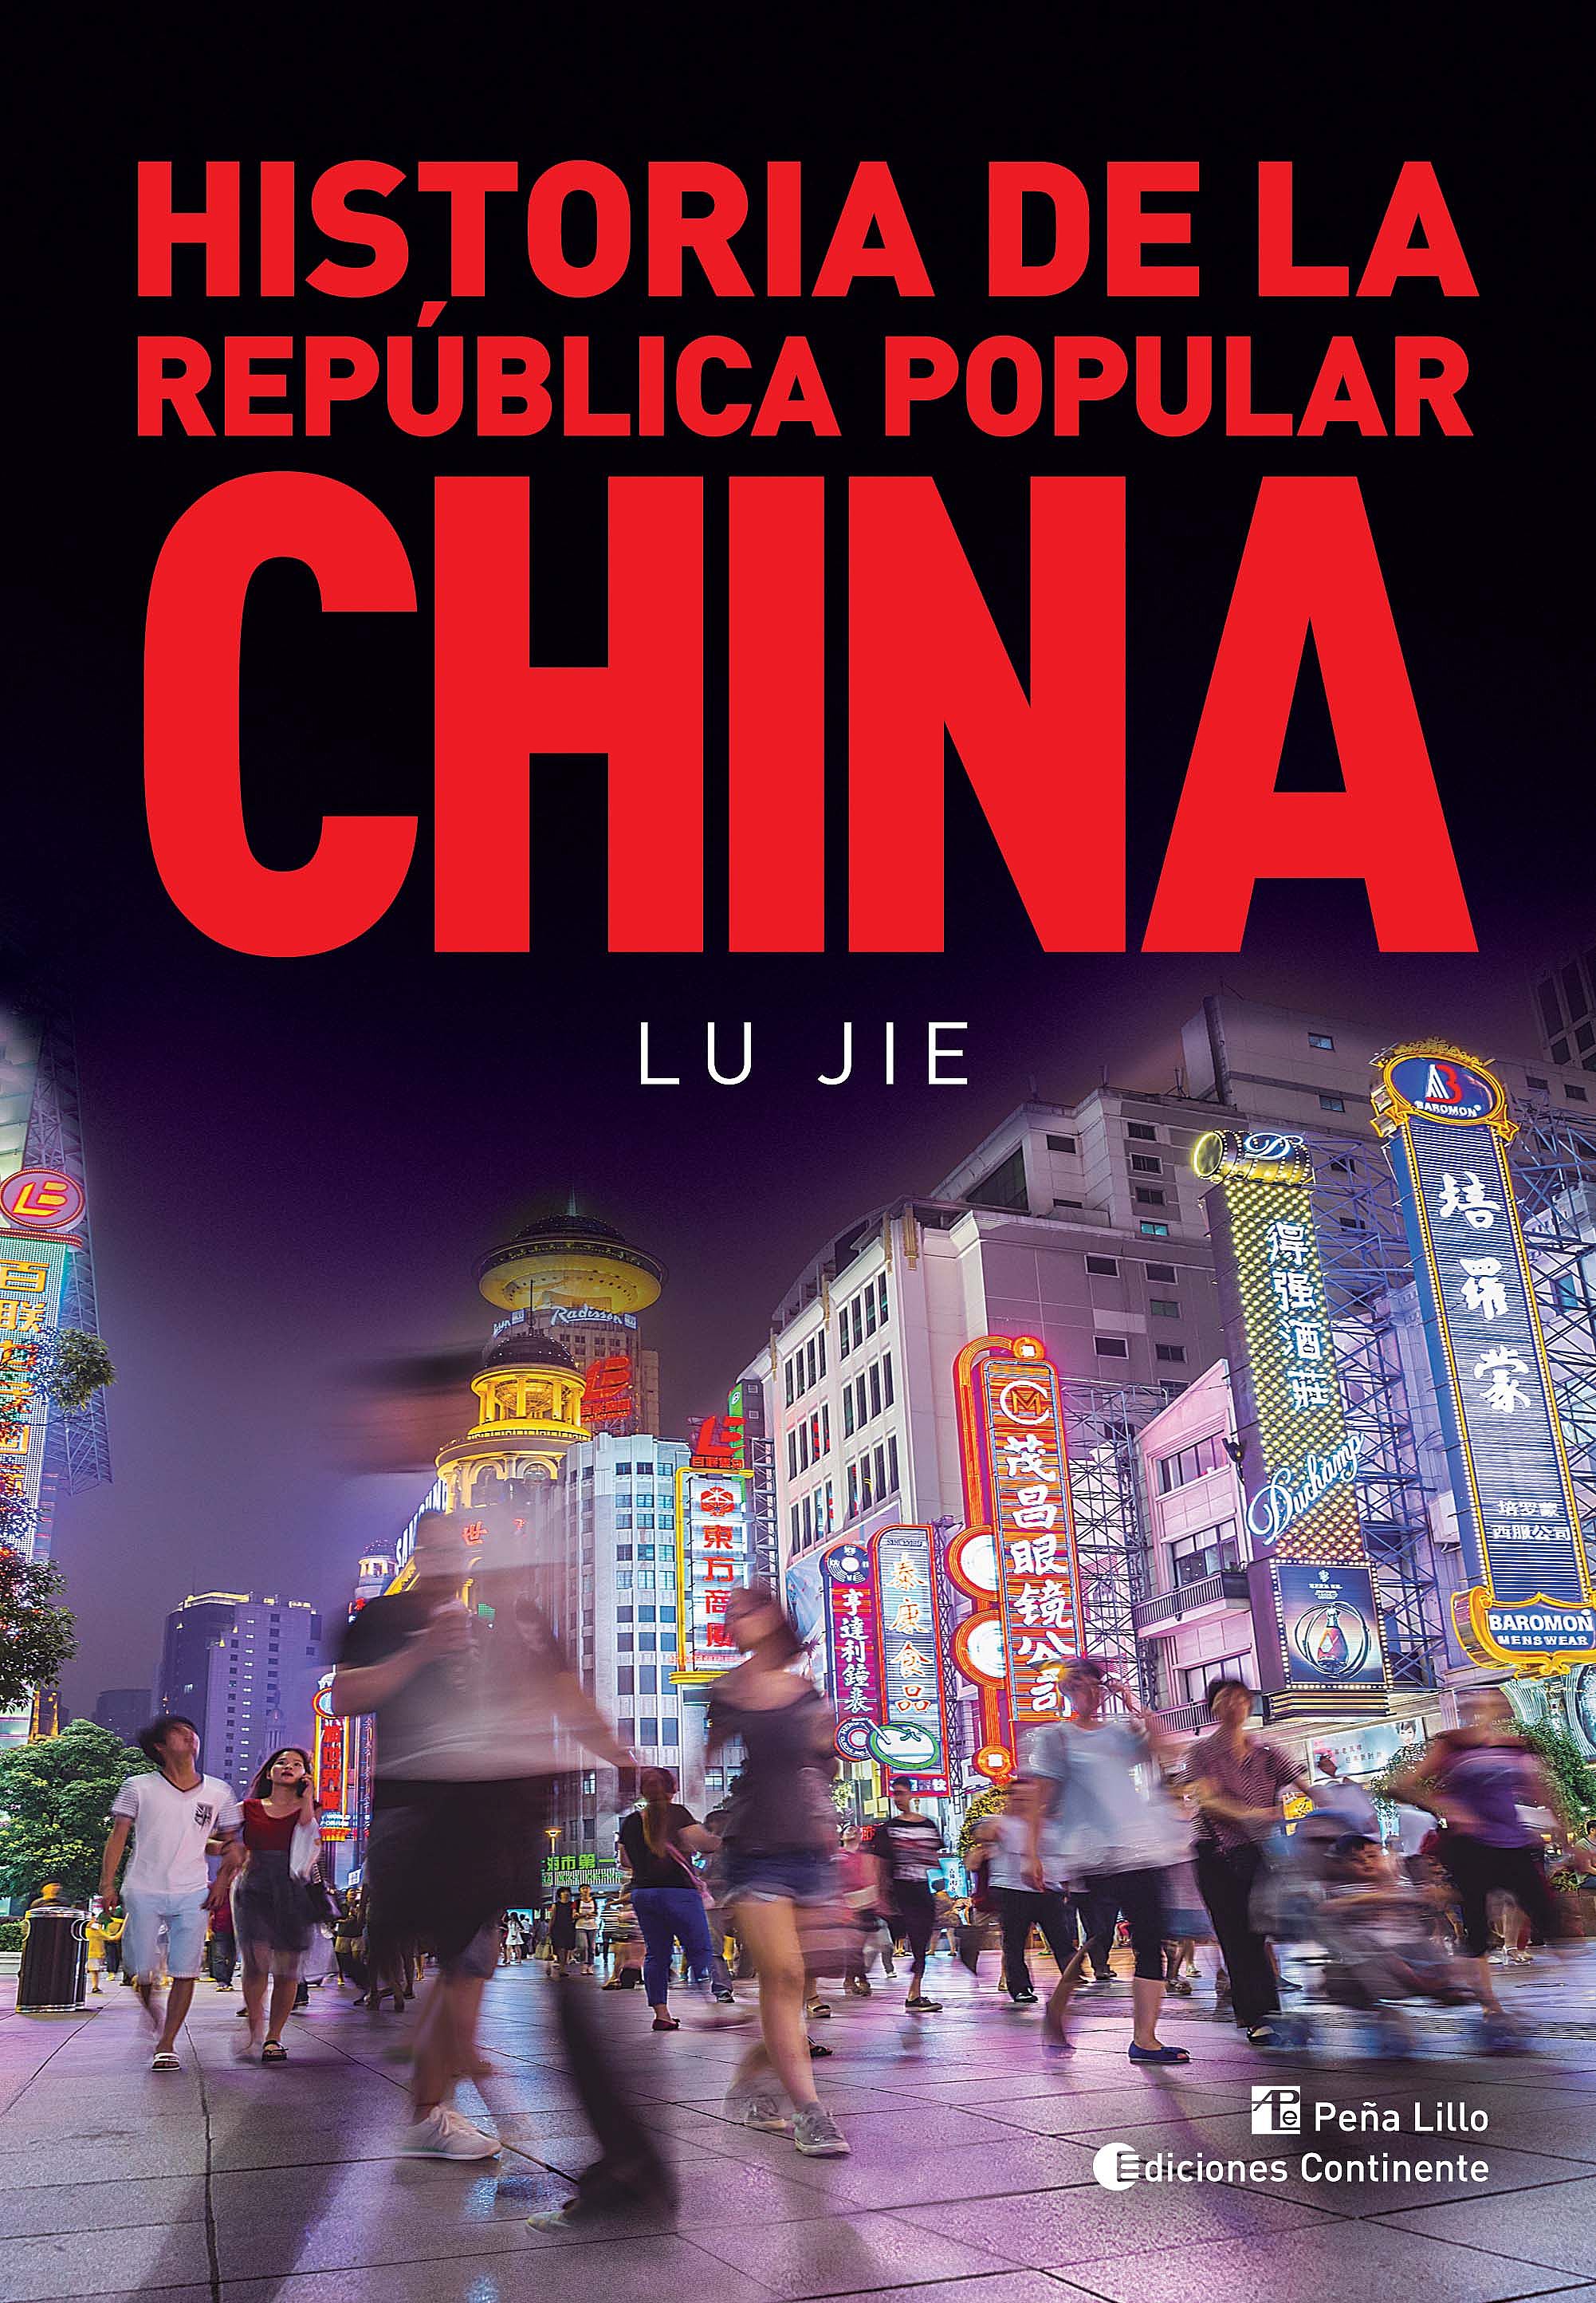 Historia De La República Popular China